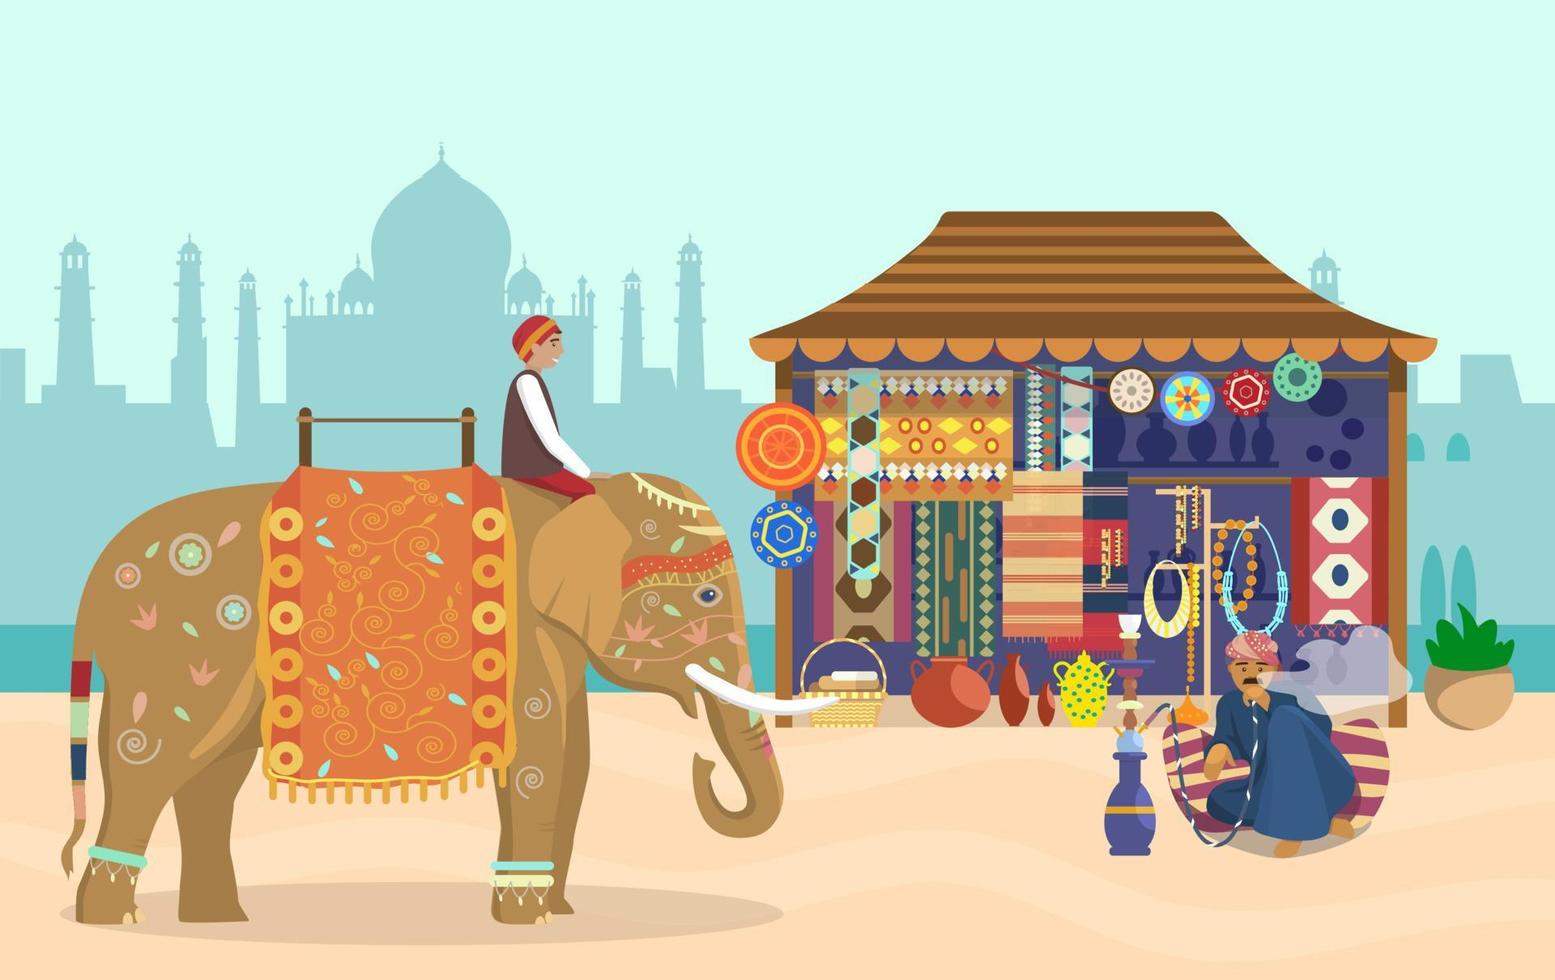 ilustração em vetor da vida indiana. cavaleiro de elefante em elefante decorado, silhueta de taj mahal, loja de souvenirs, cerâmica, tapetes, tecidos, joias, cachimbo de água homem sentado em um travesseiro.